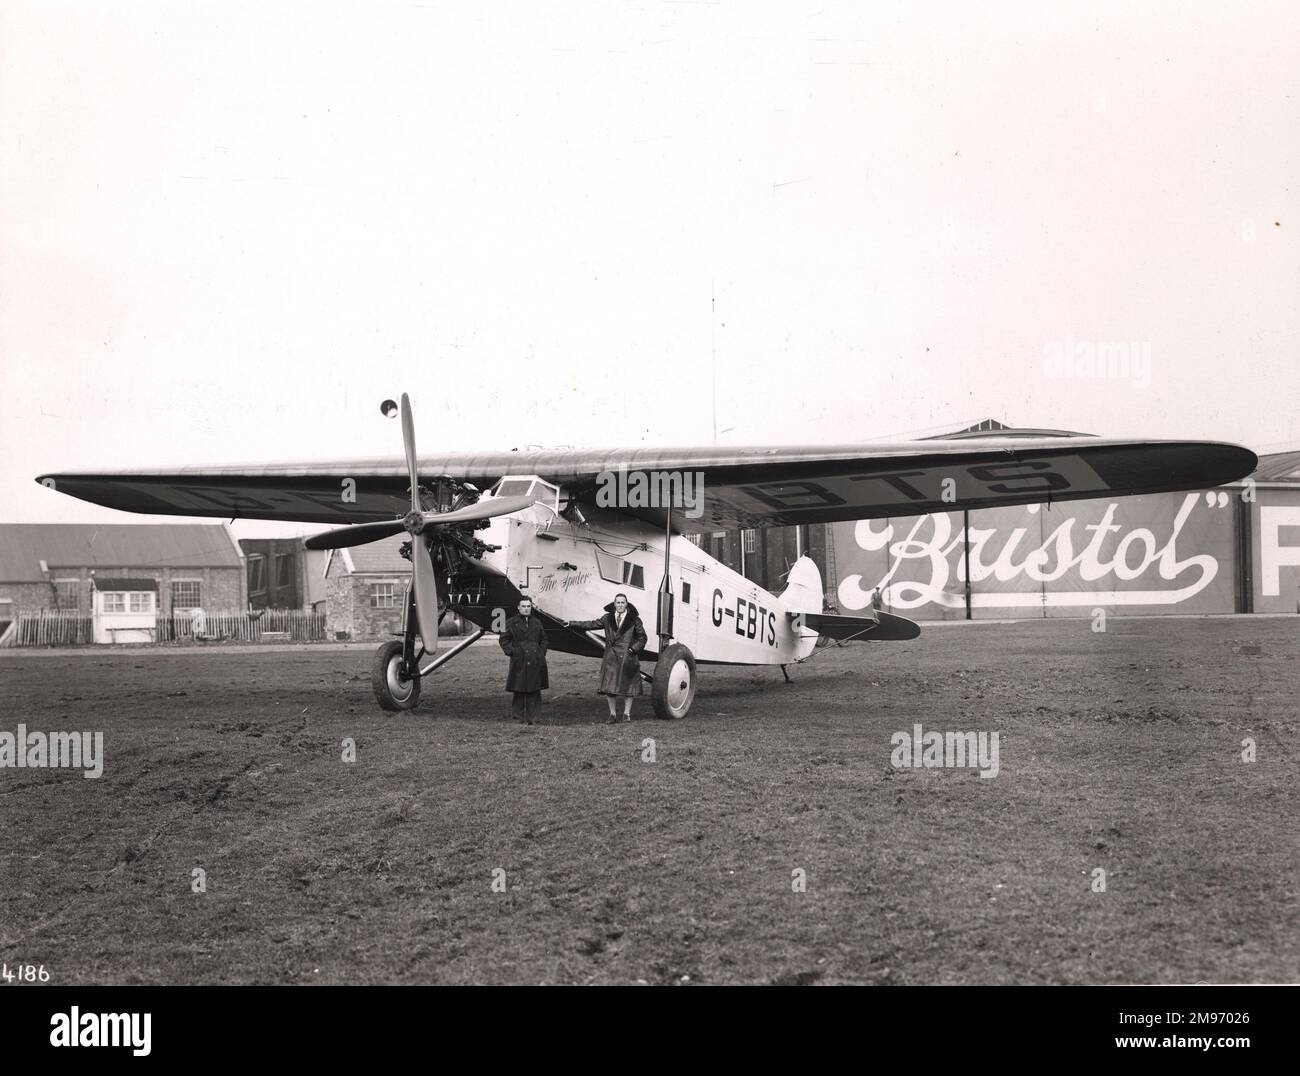 Fokker FVIIa, G-EBTS, die Spinne, die in 20 ½ Tagen von Captain C.D. zum Cpae und zurück geflogen wurde Barnard. Stockfoto